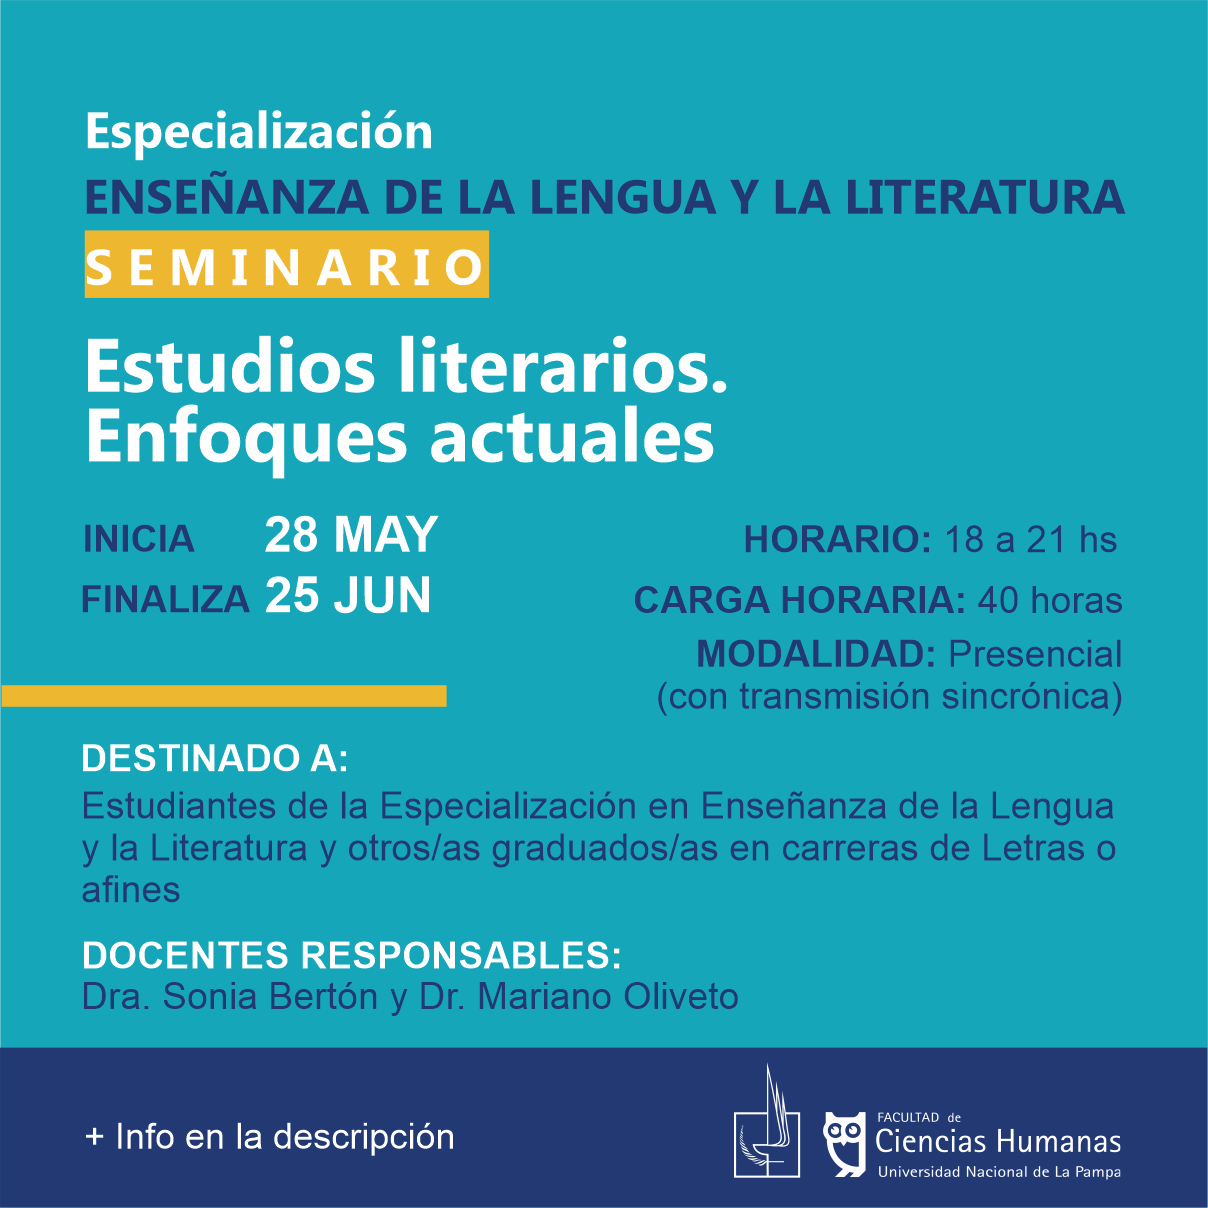 Estudios literarios. Enfoques actuales - Especialización en Enseñanza de la Lengua y la Literatura - SUSPENDIDO